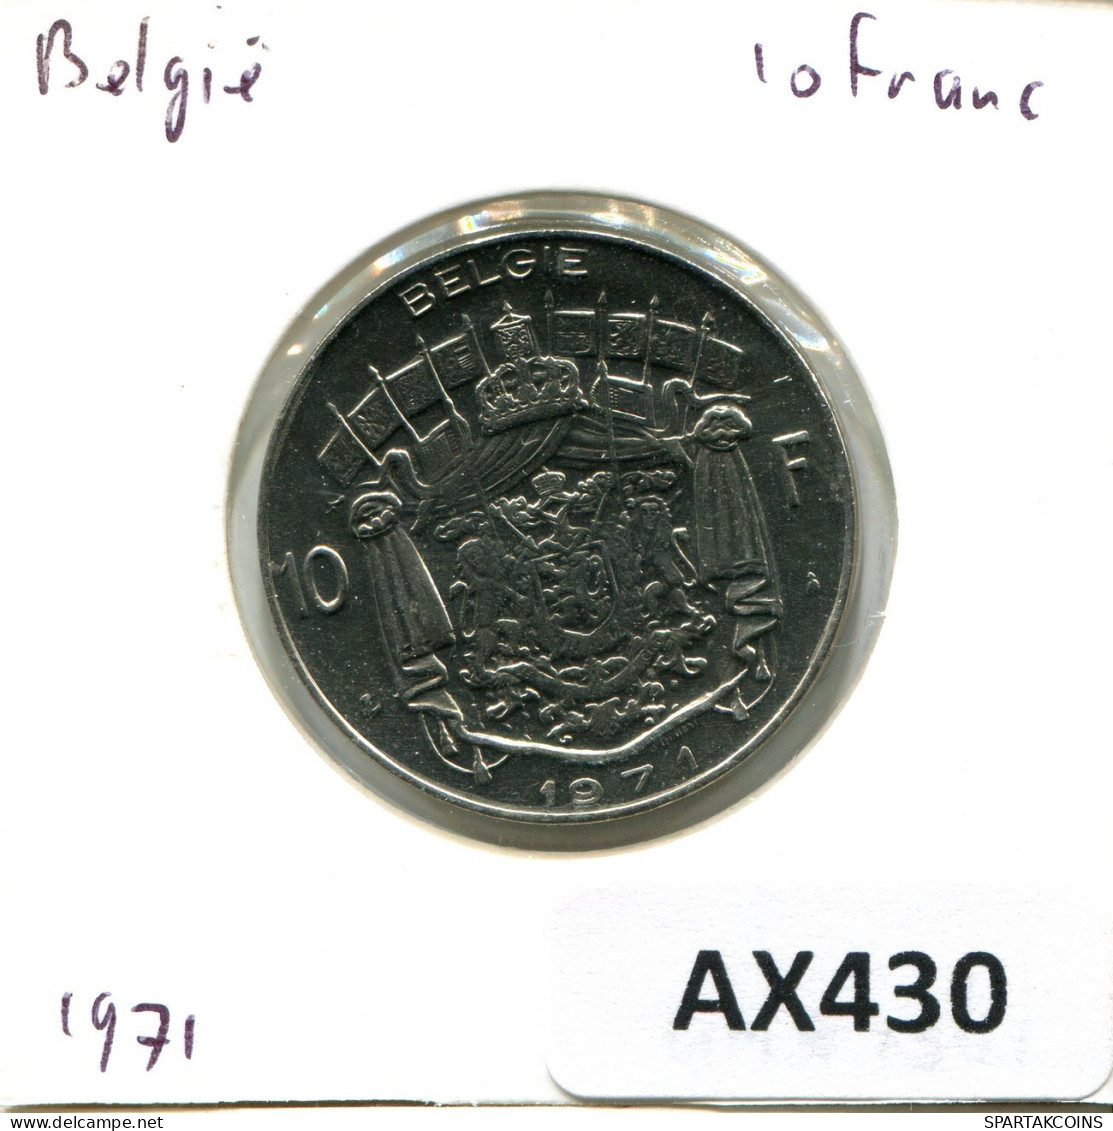 10 FRANCS 1971 BELGIUM Coin DUTCH Text #AX430.U.A - 10 Frank